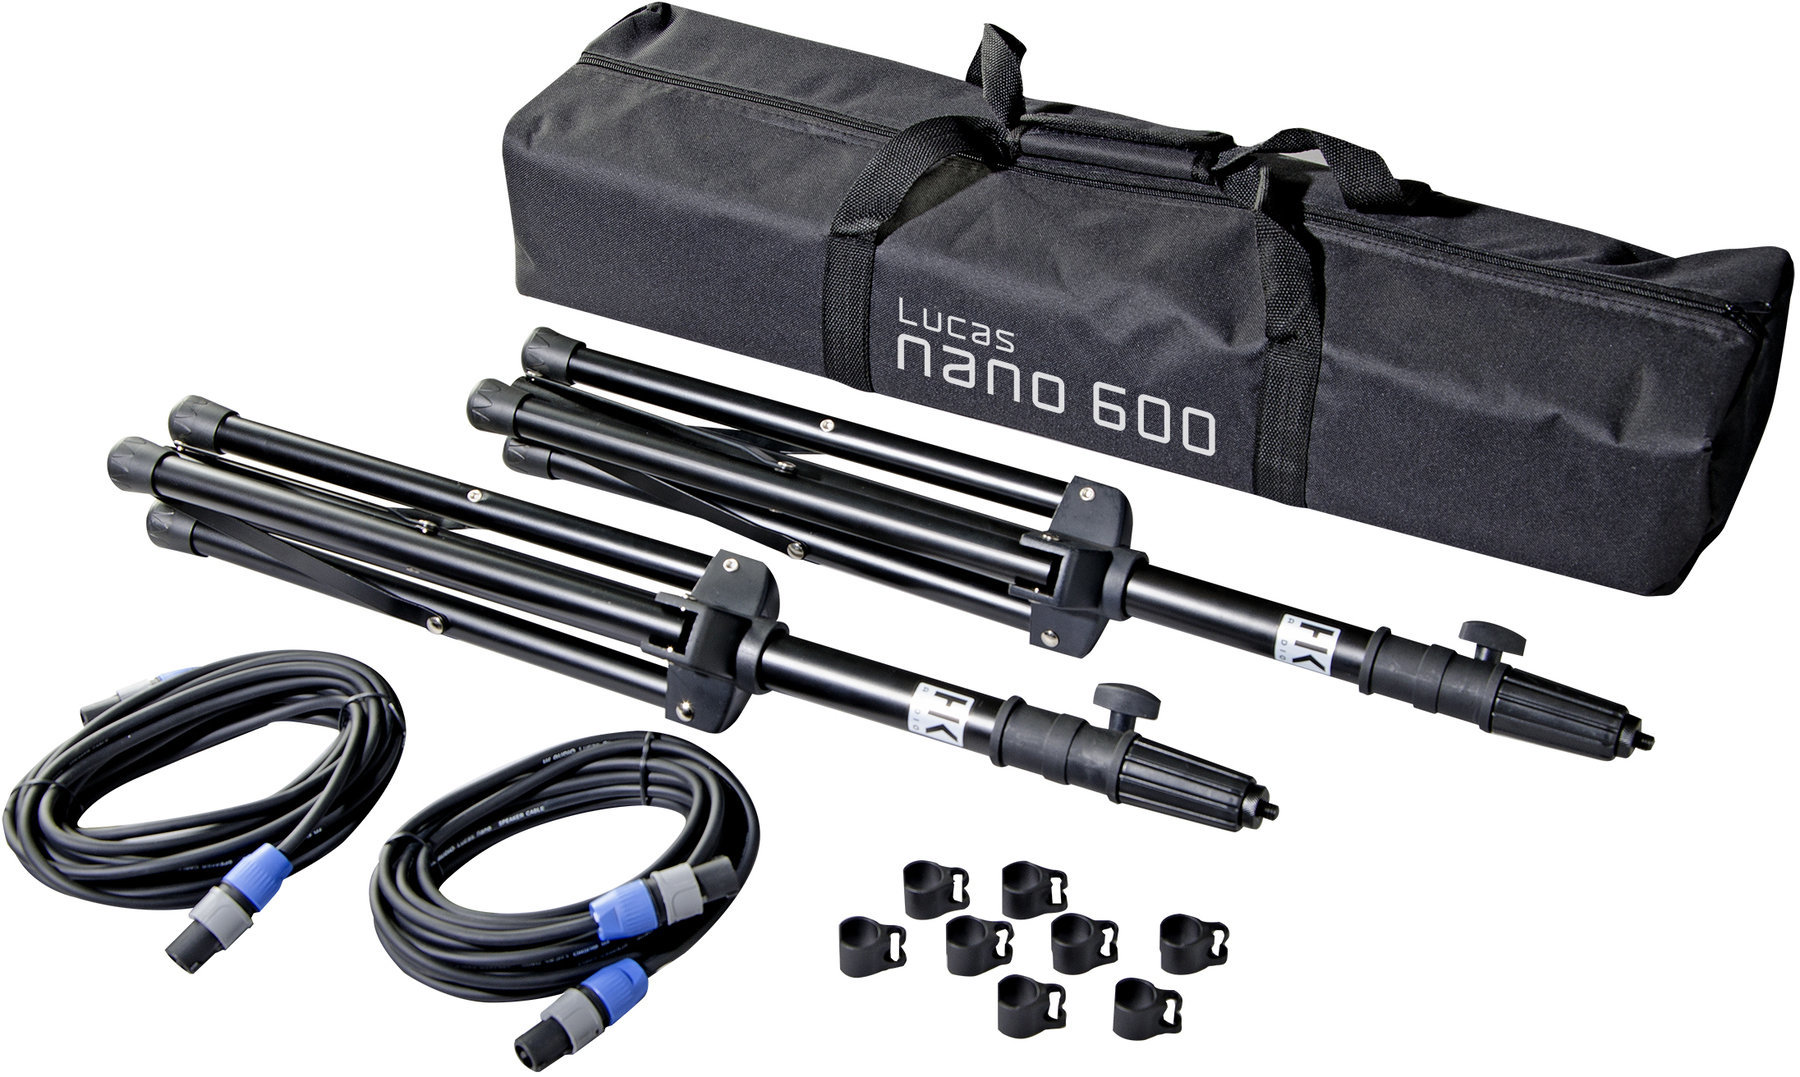 Teleskopski štap za stalak HK Audio L.U.C.A.S. NANO 600 Stereo Stand Add On